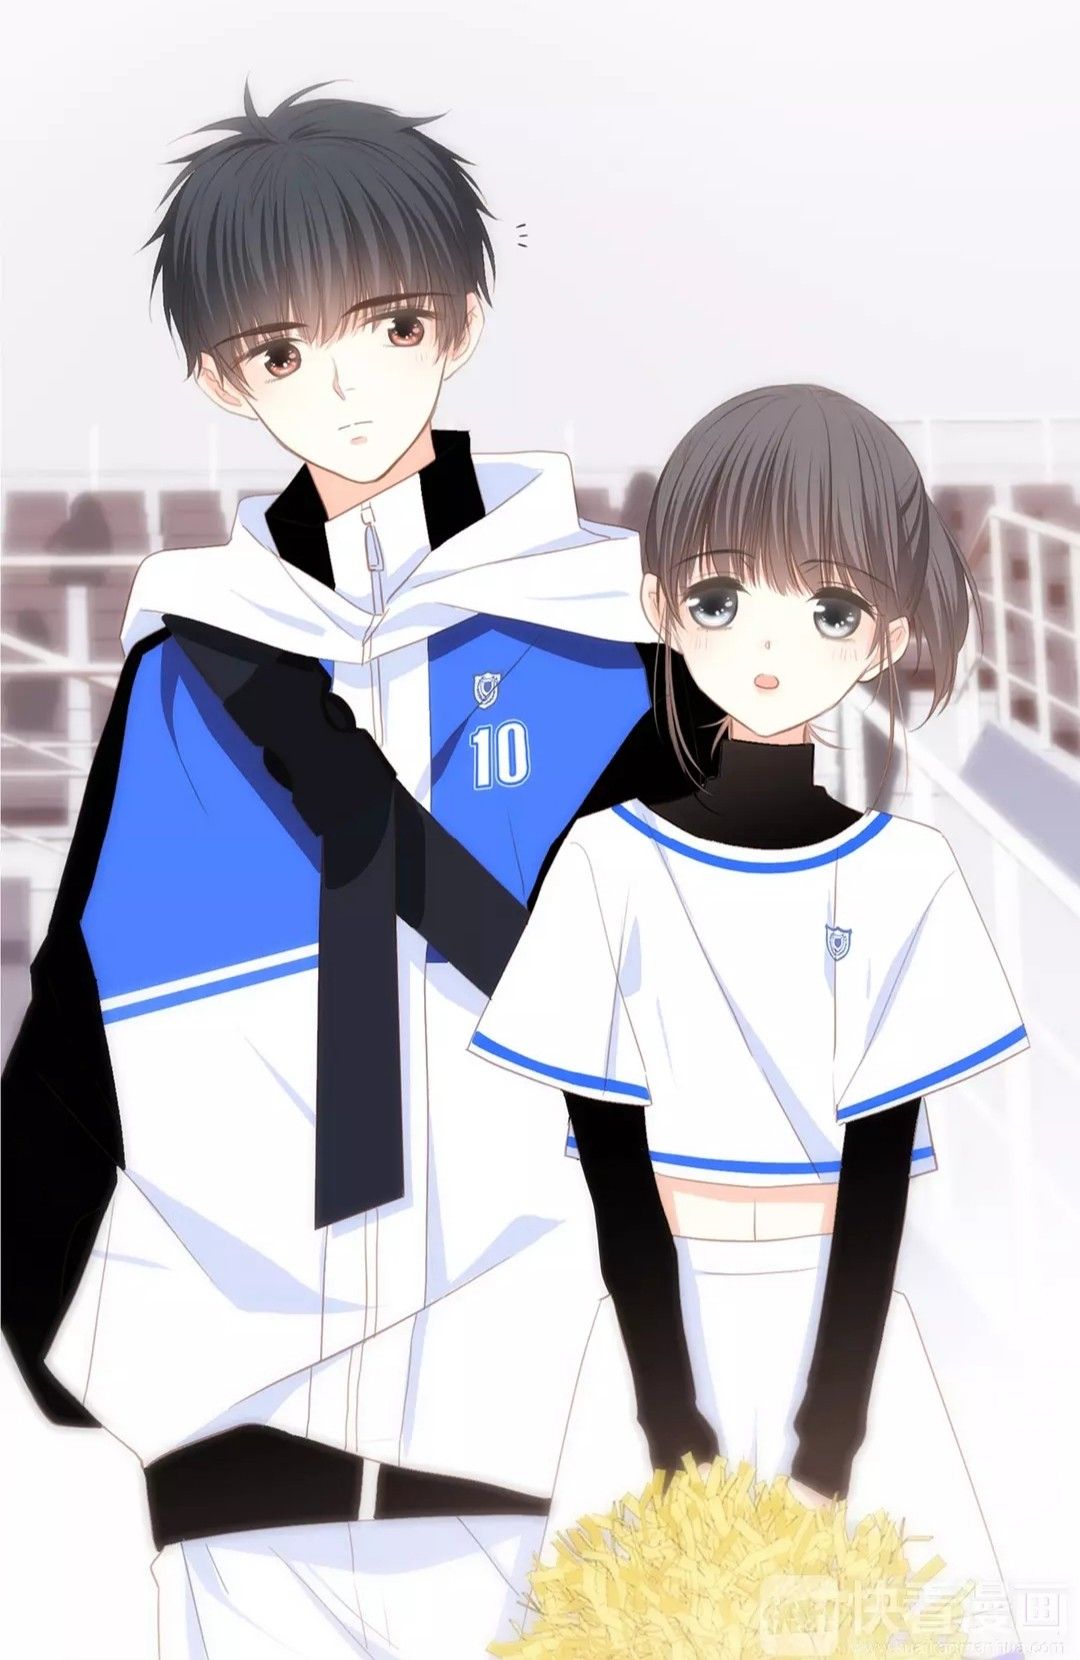 Ảnh cặp đôi anime cute